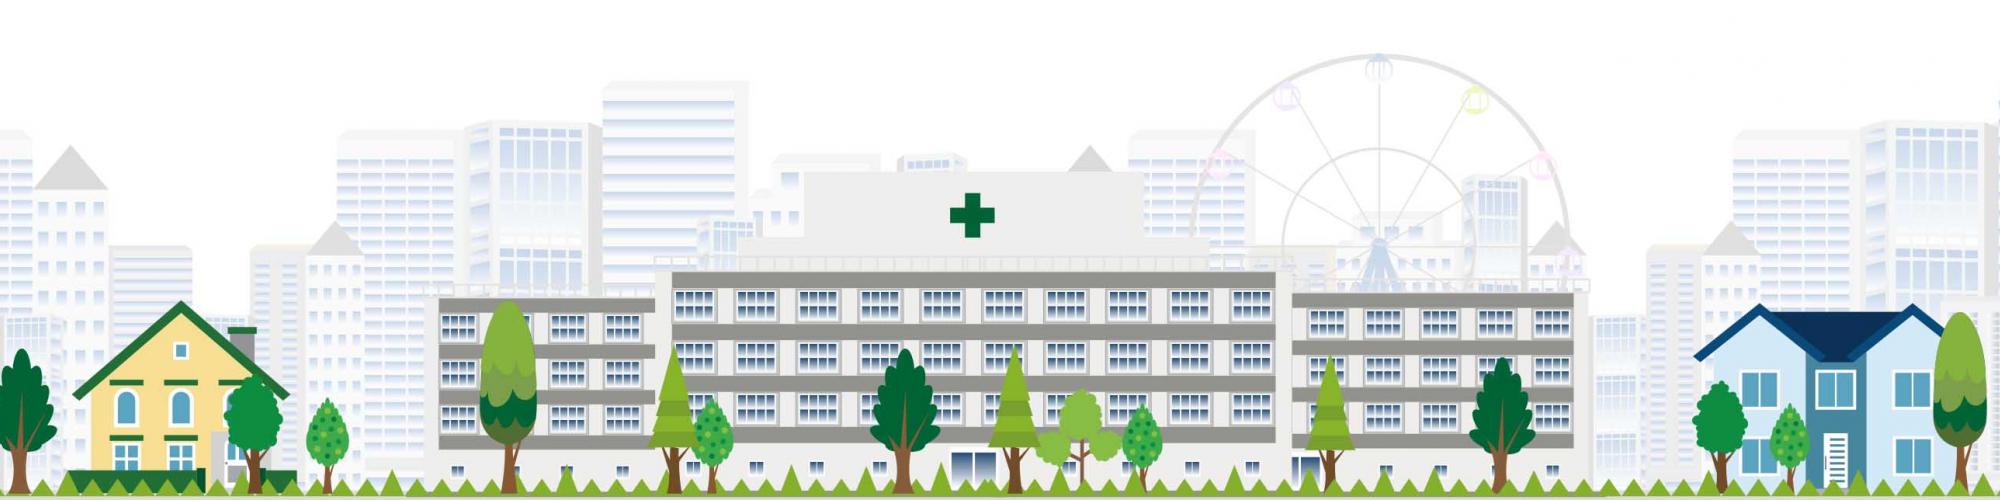 Medical Park Bad Sassendorf GmbH - Klinik im Park